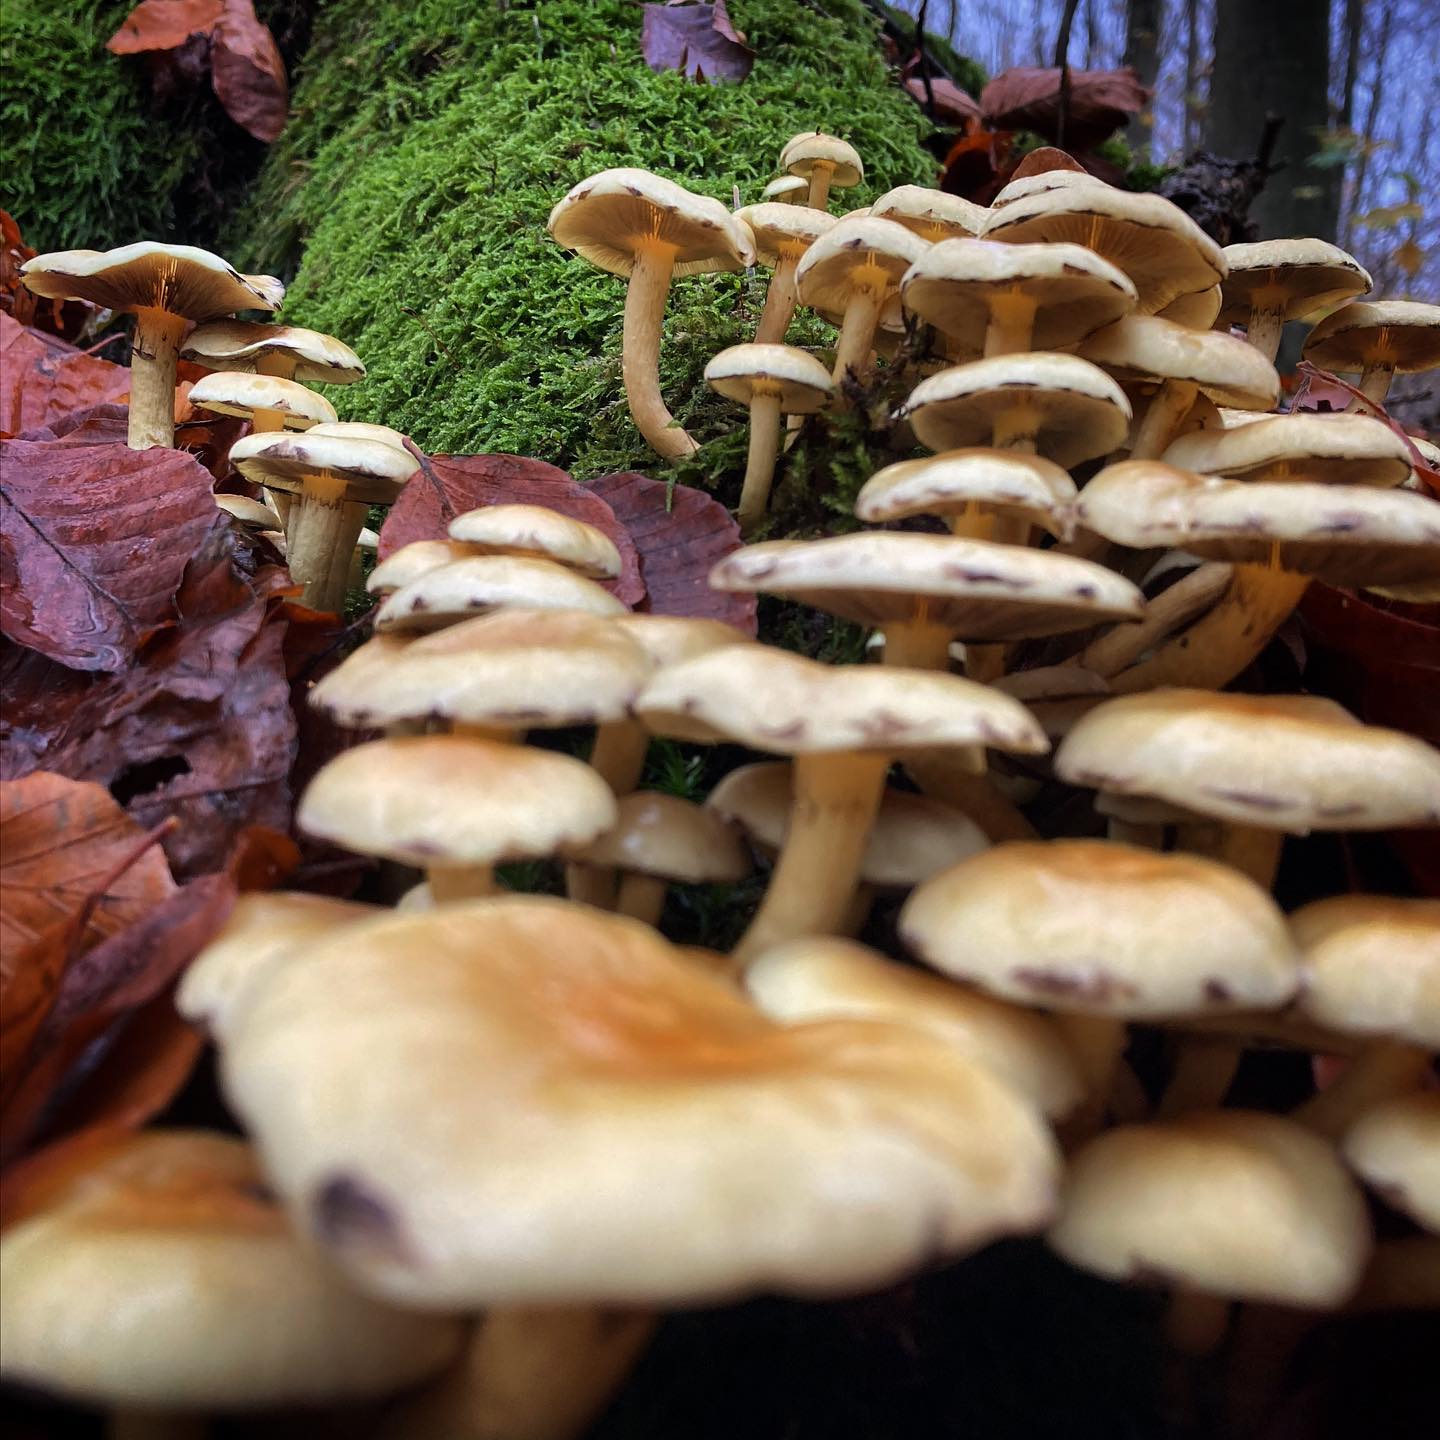 Svampe ved Fløjstrup. #fløjstrup #aarhus #marseliskovene #visitaarhus #natur #nature #svampe #mushrooms